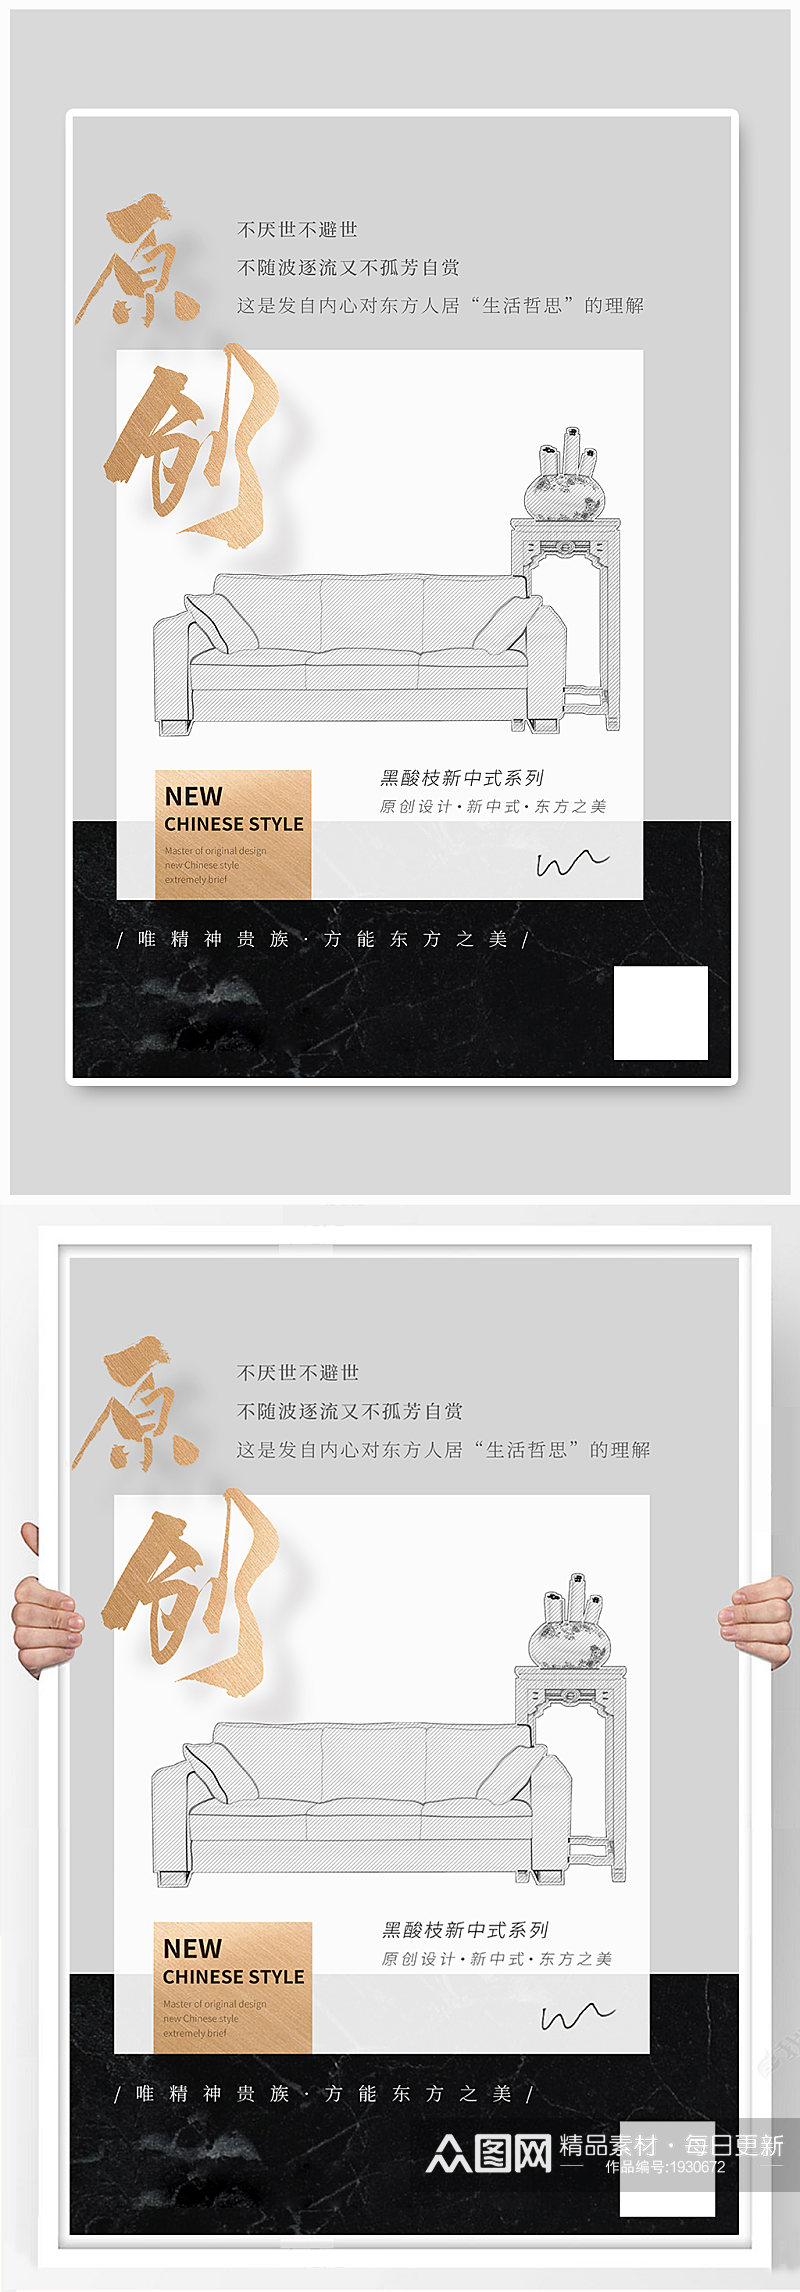 新中式家具宣传灰黑简洁海报素材